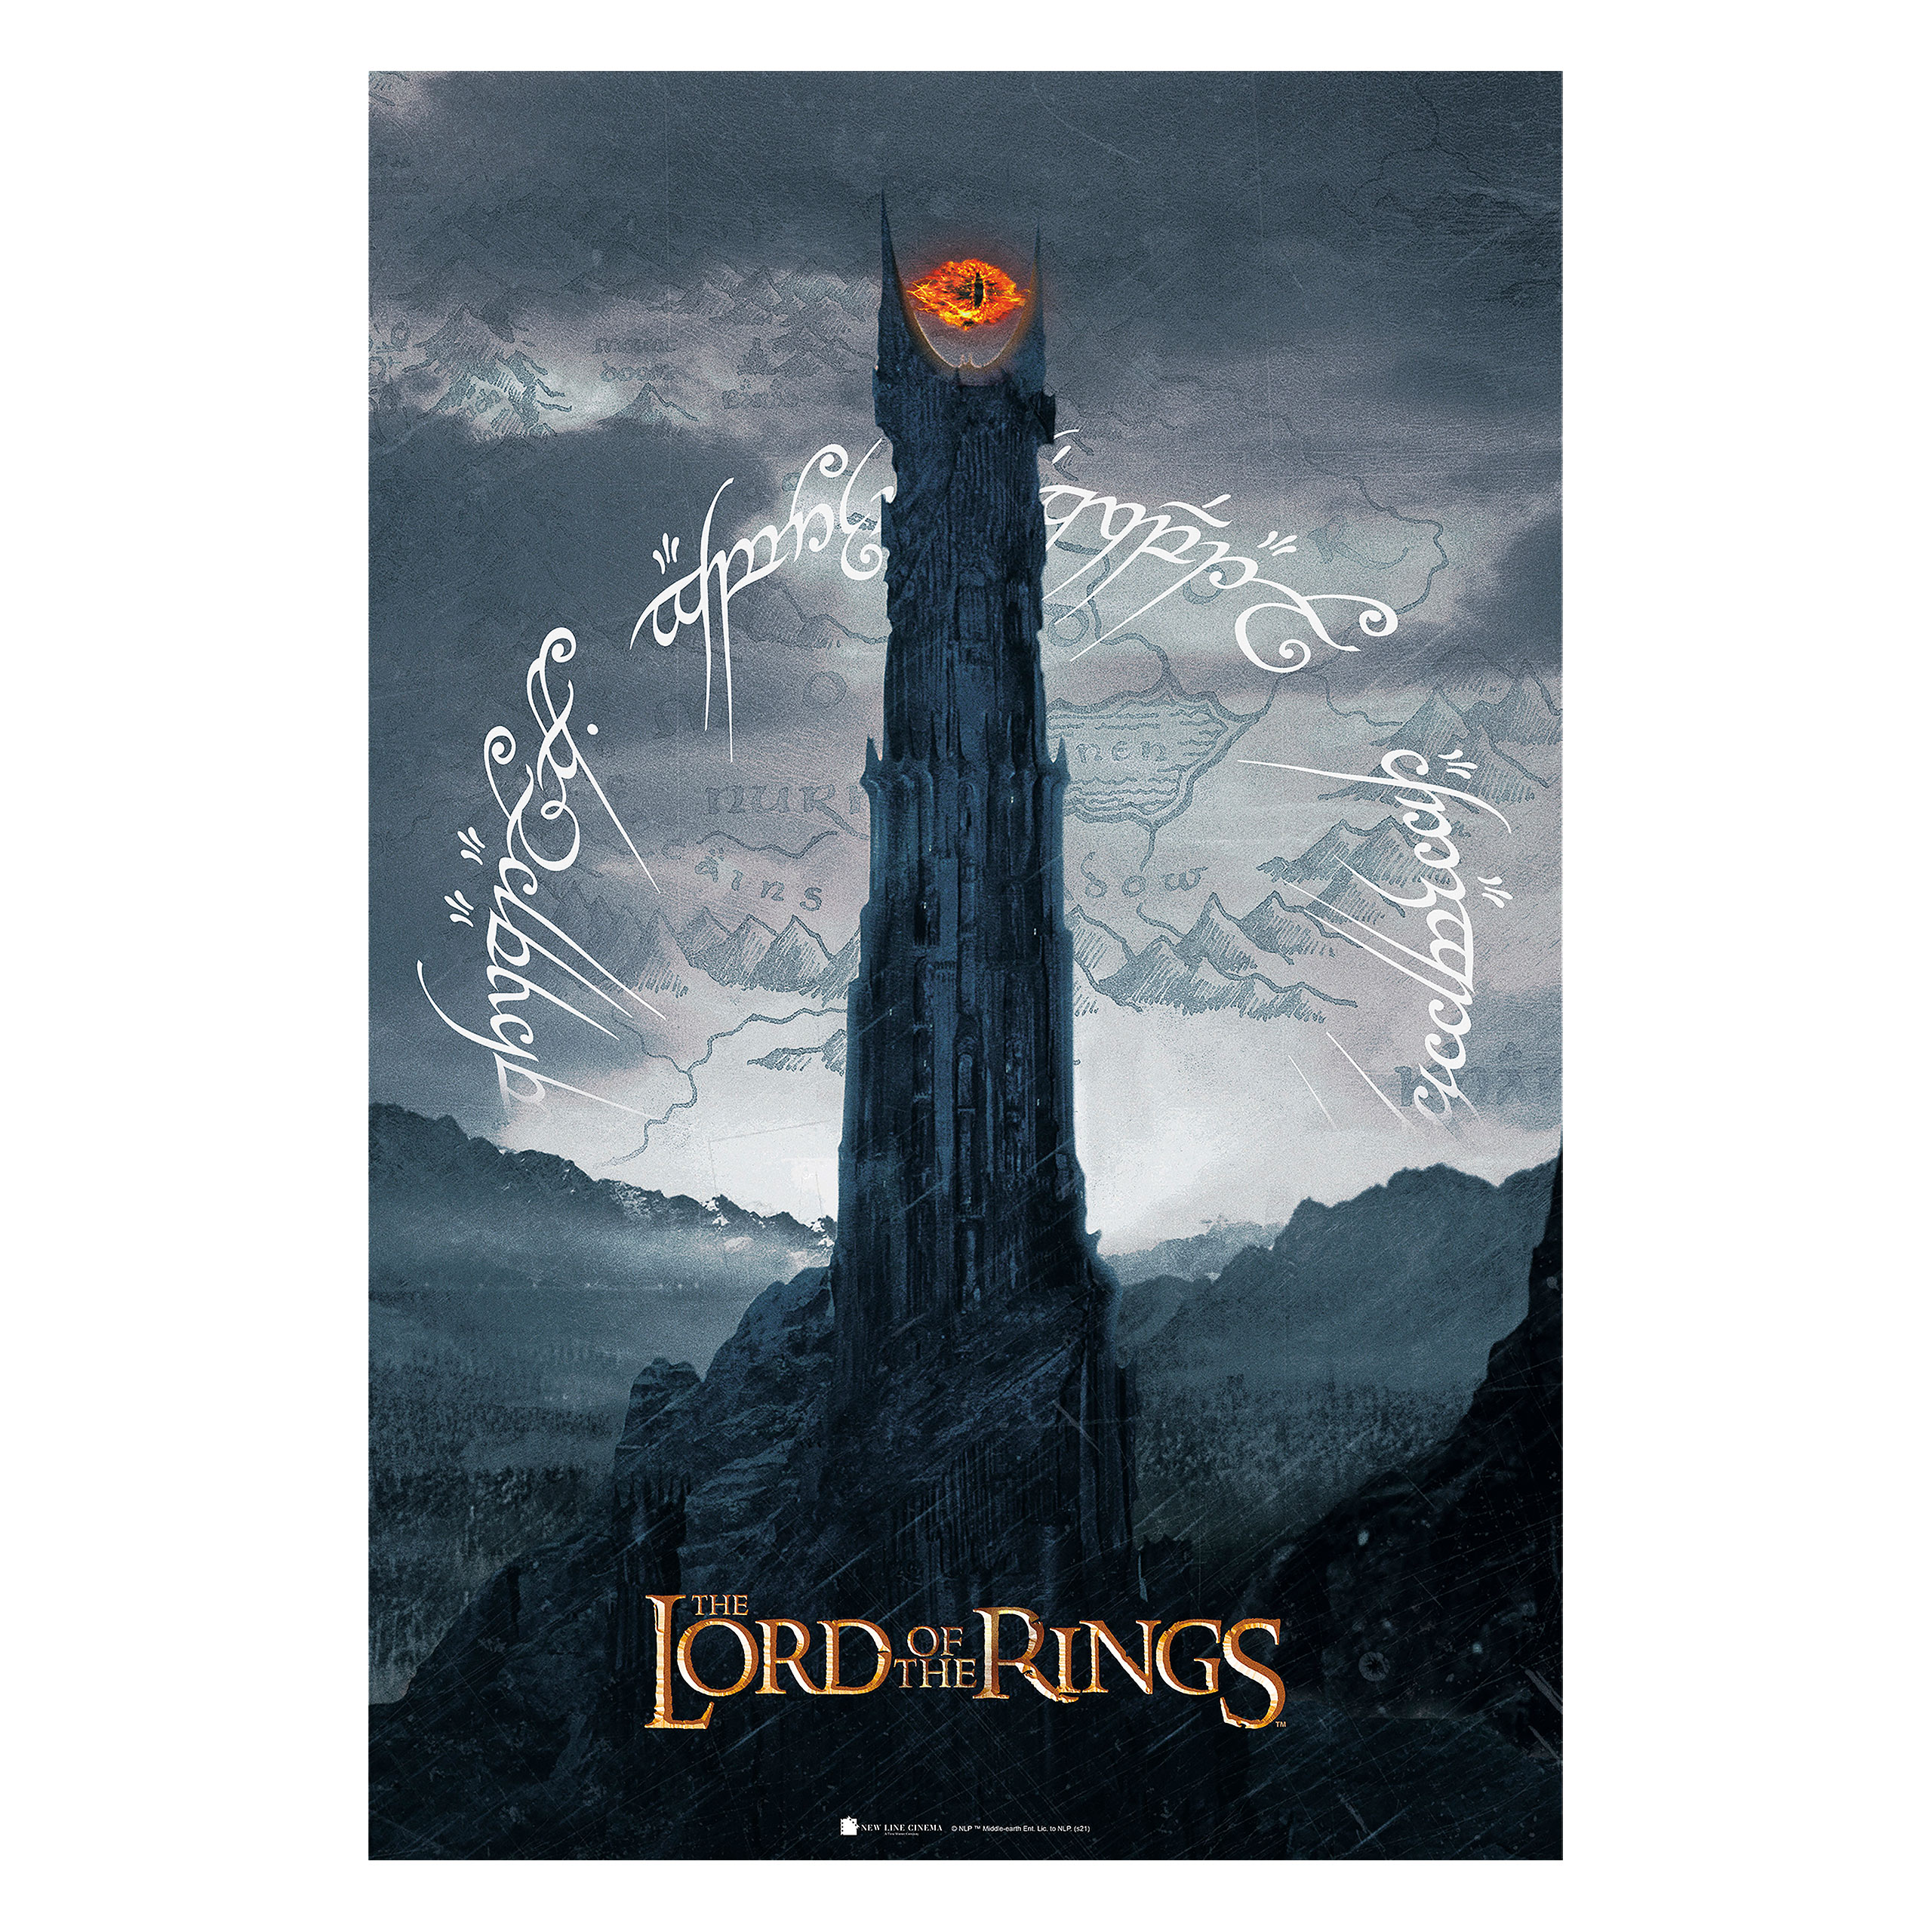 Herr der Ringe - Saurons Auge Maxi Poster